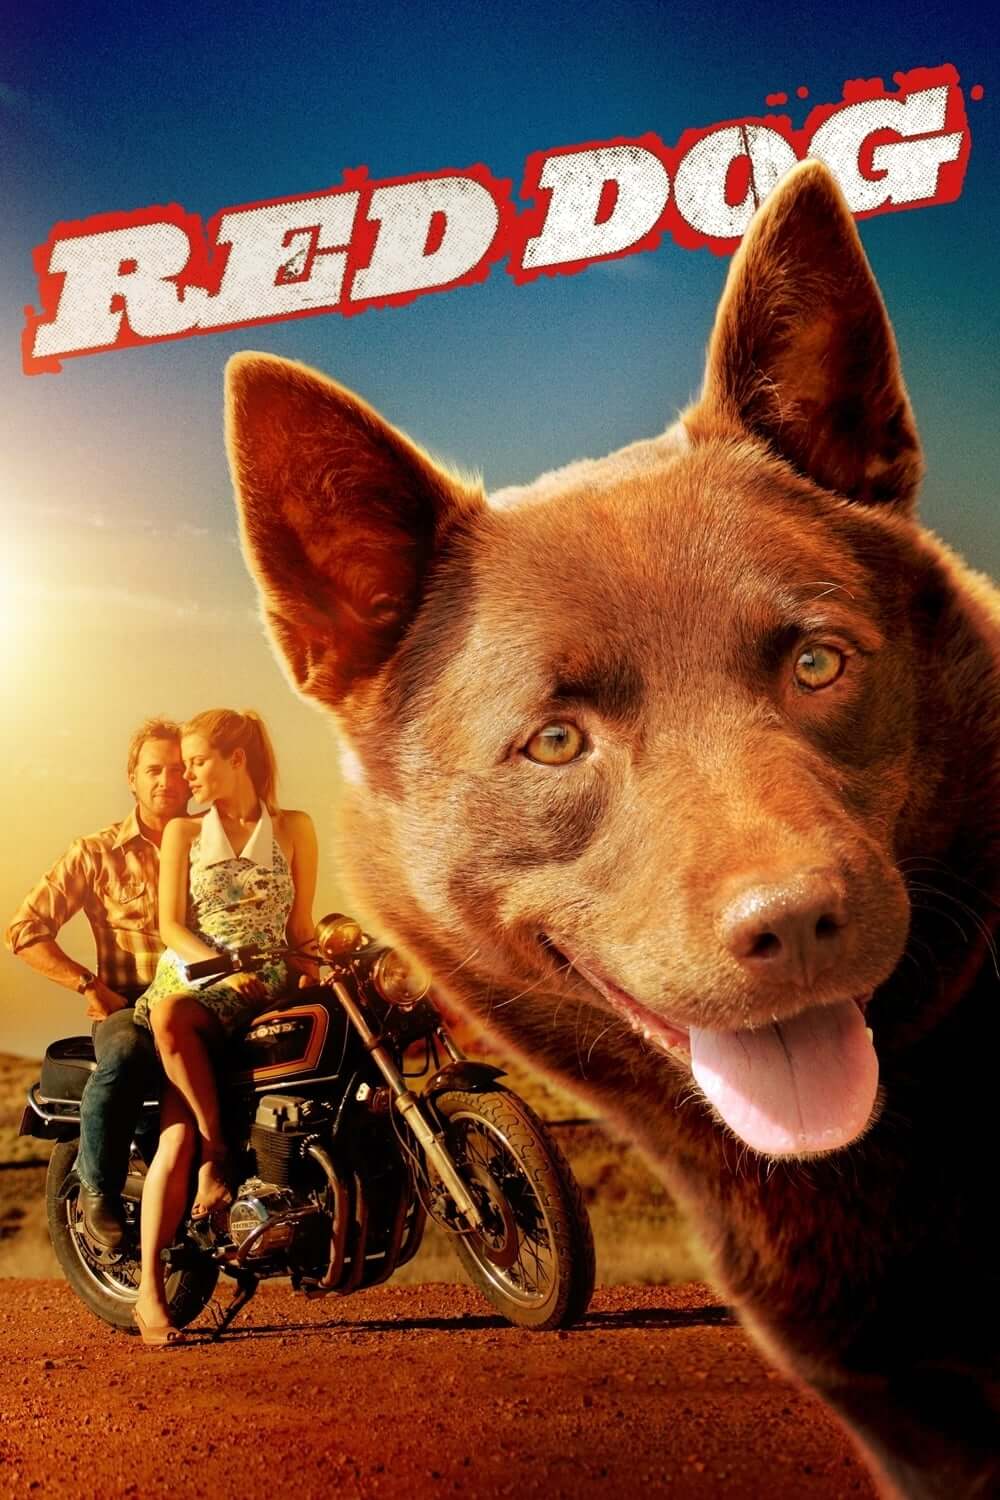 سگ قرمز (Red Dog)